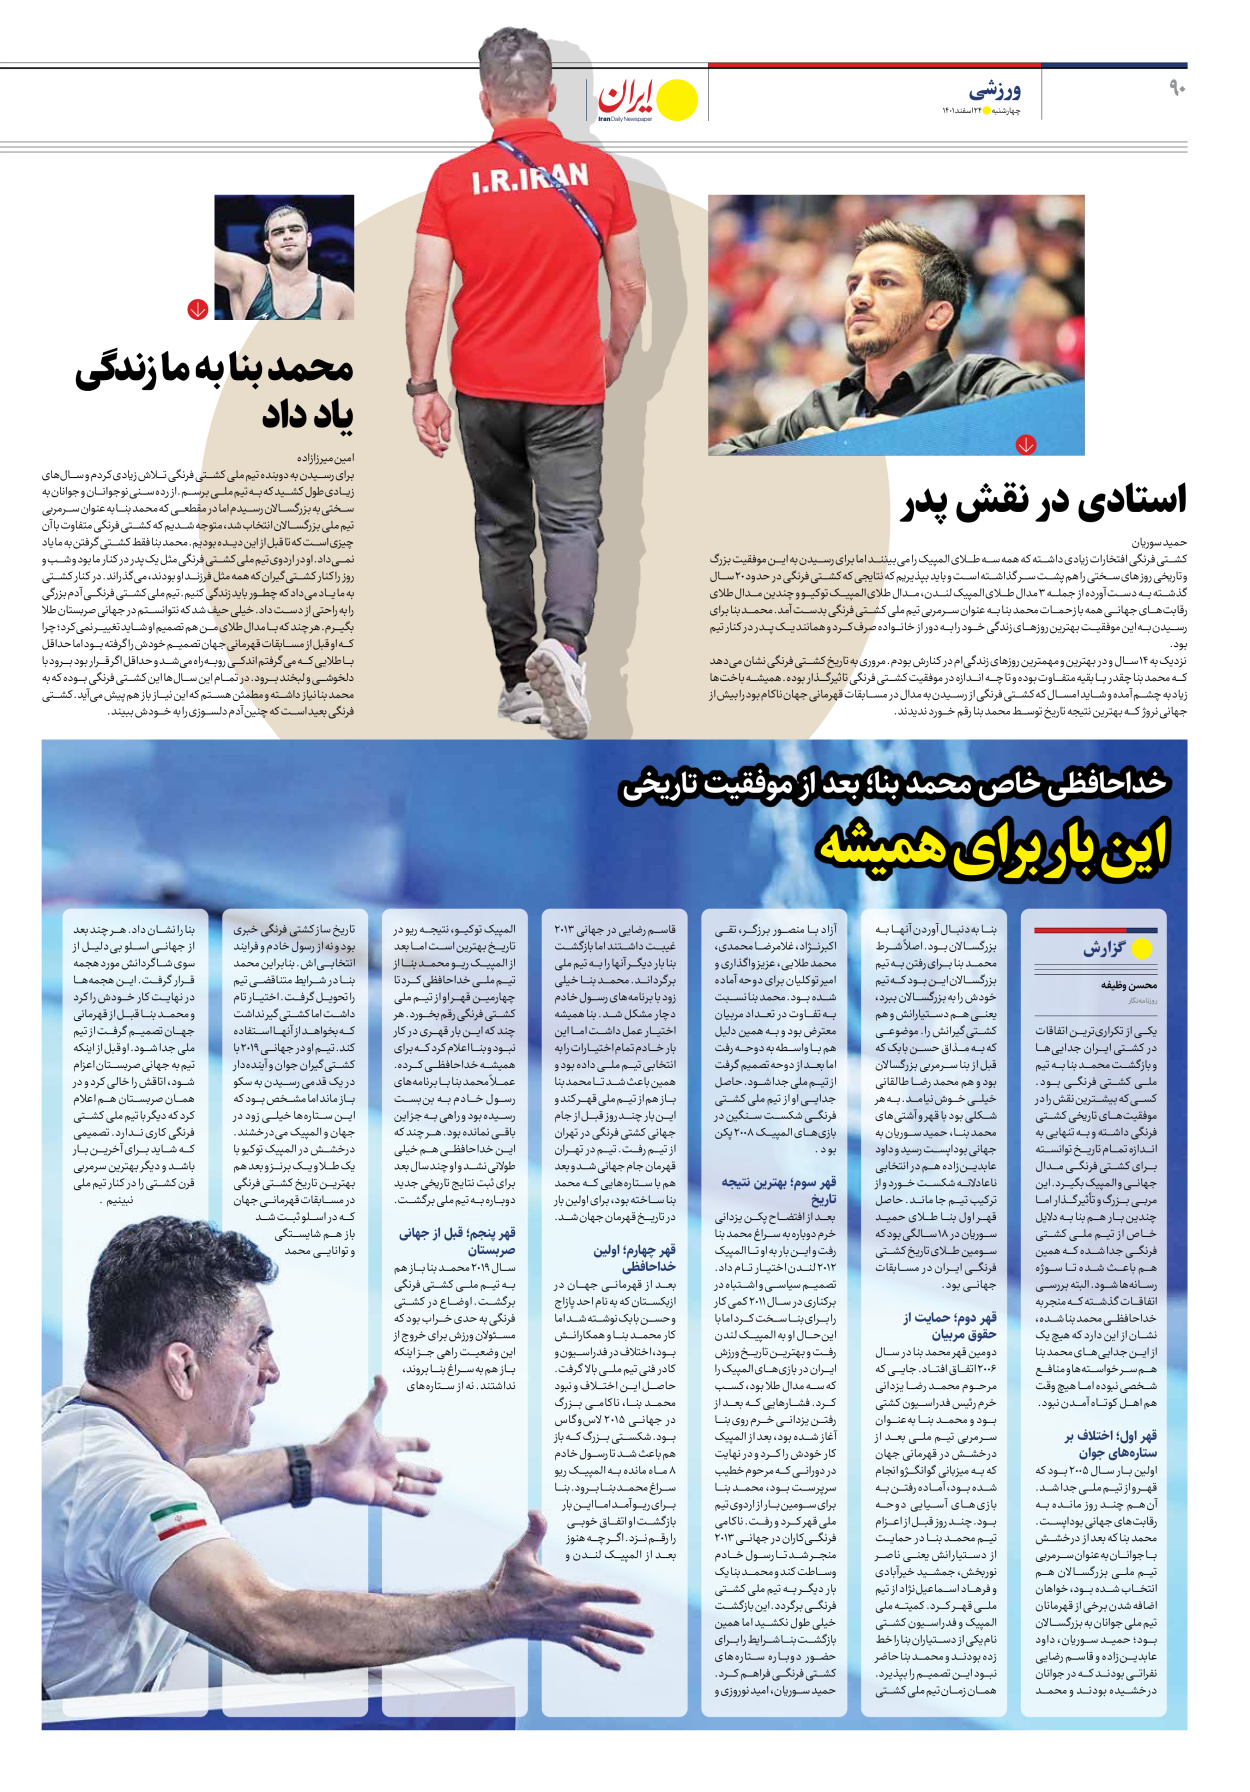 روزنامه ایران - ویژه نامه ویژه نوروز - ۲۴ اسفند ۱۴۰۱ - صفحه ۹۰